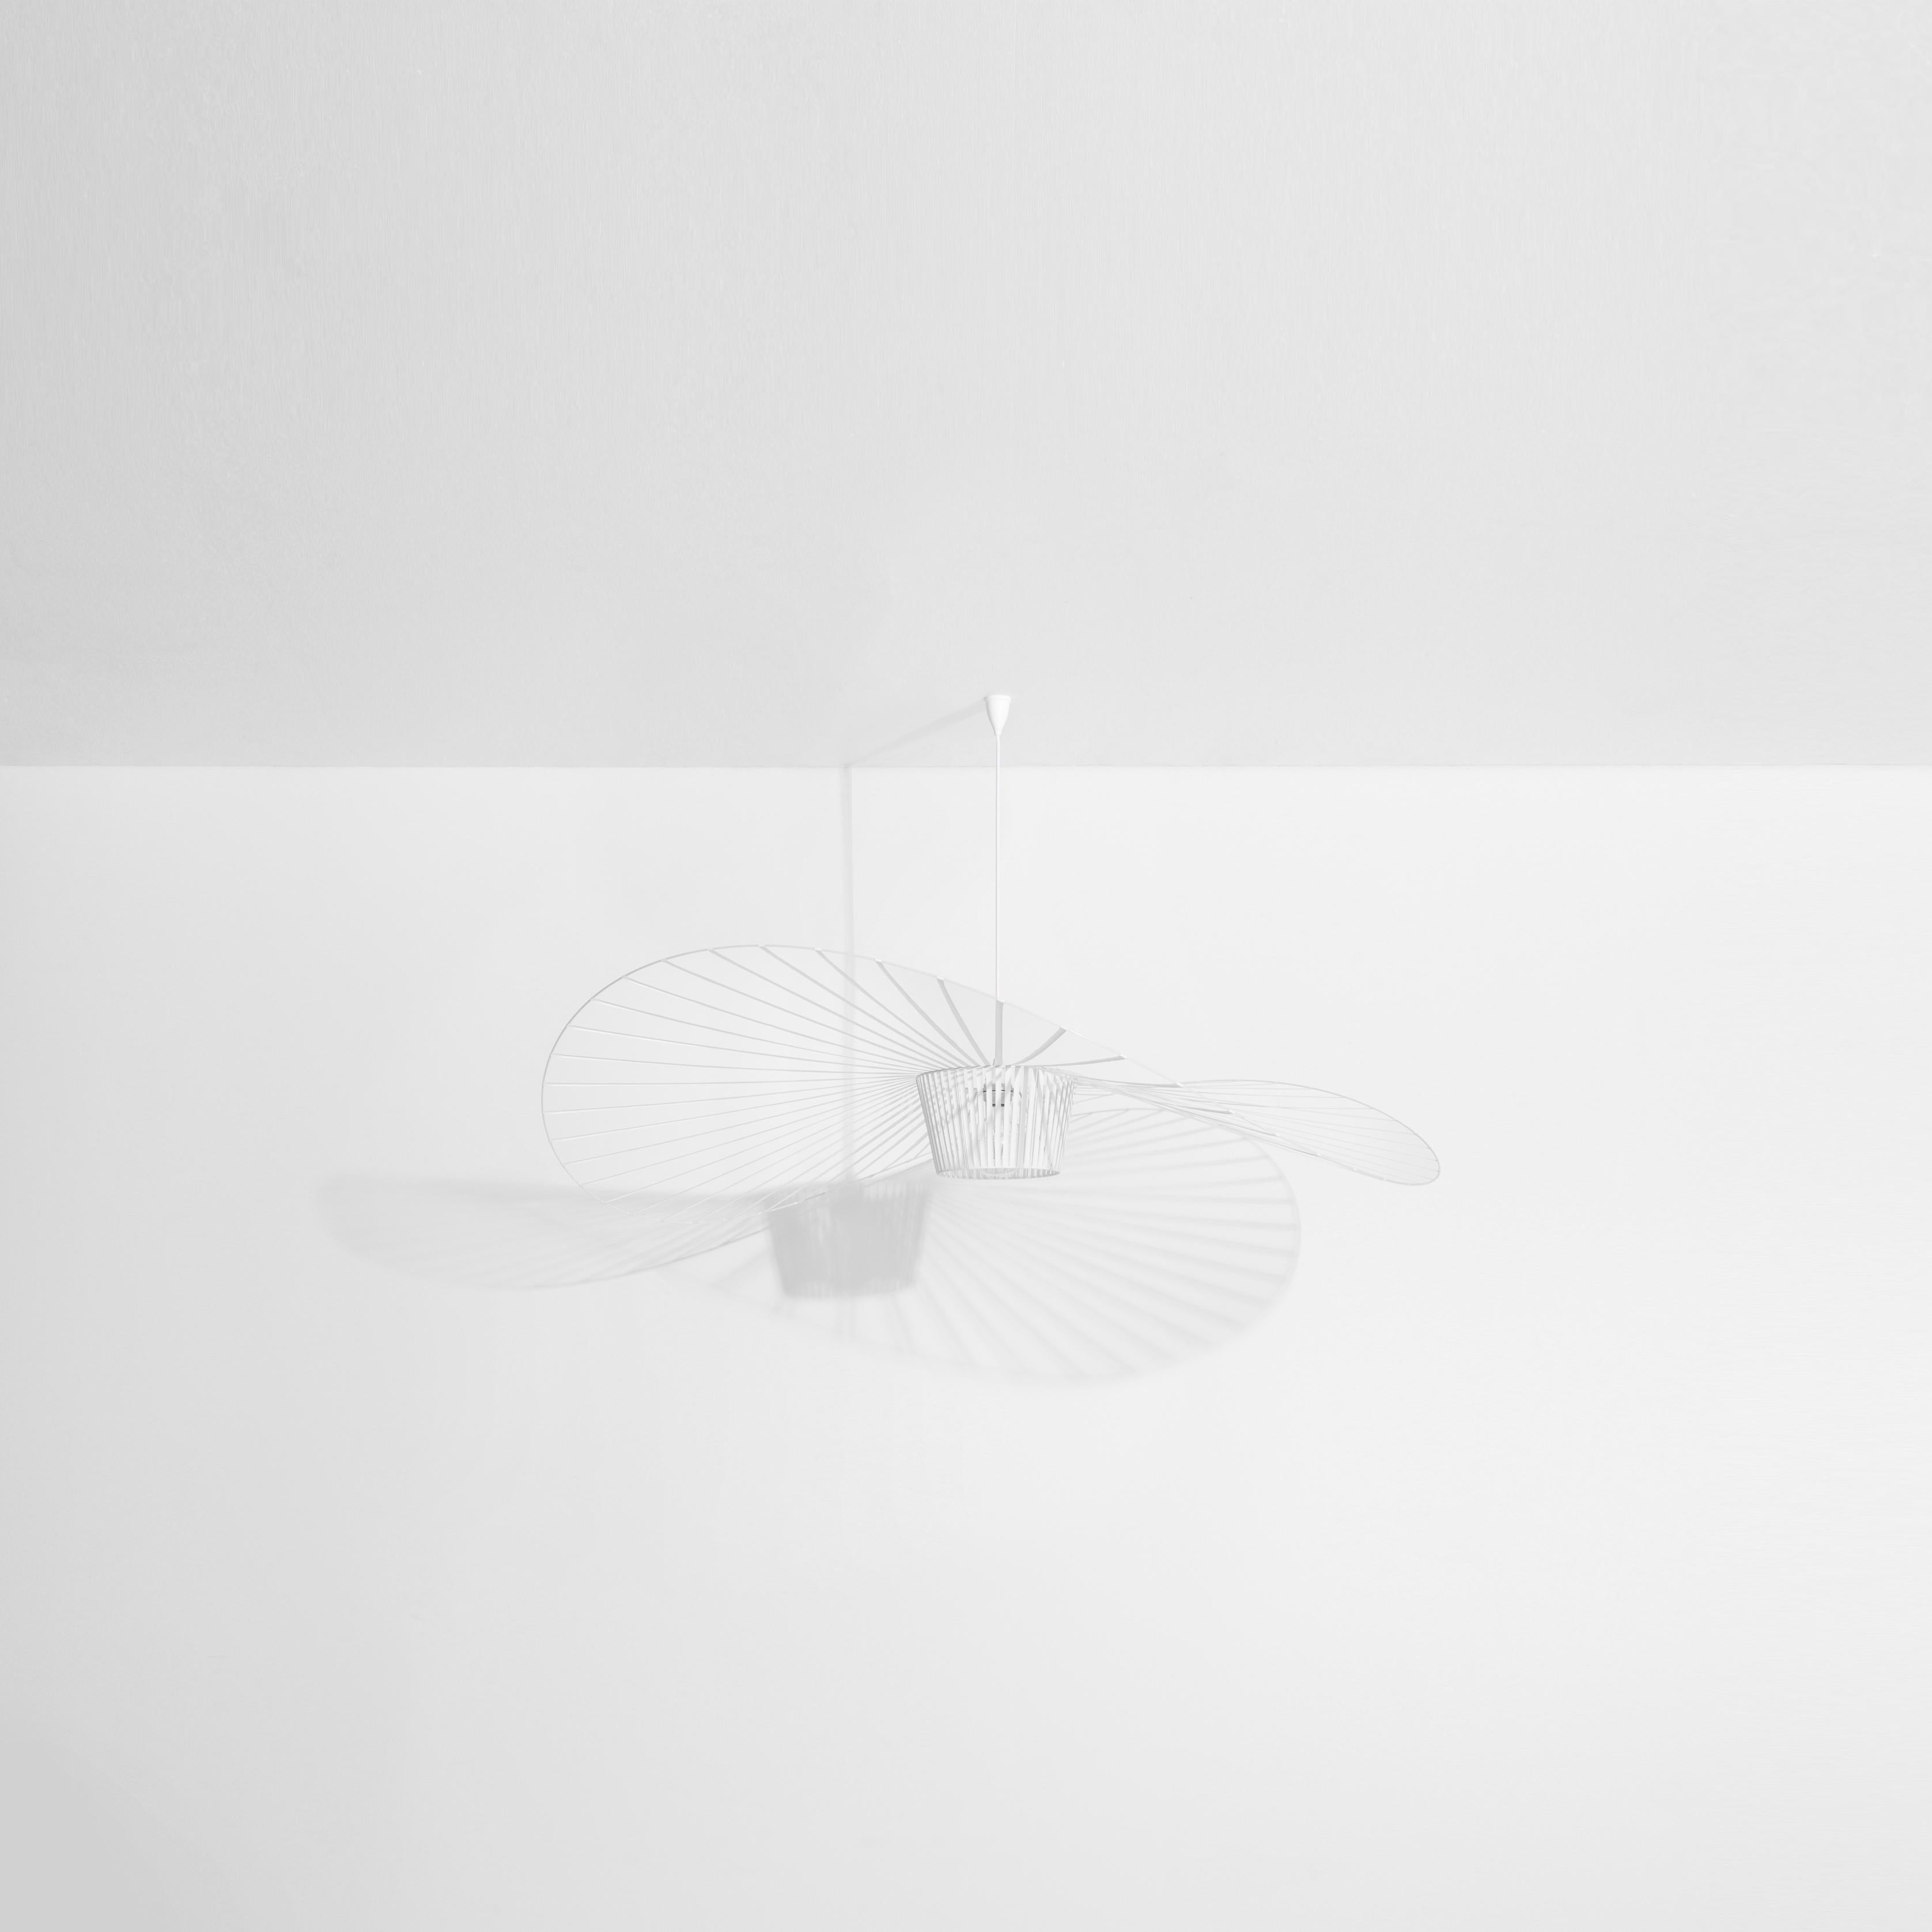 Petite Friture Medium Vertigo Suspension Light in White par Constance Guisset, 2010

Éditée par Petite Friture en 2010, la suspension Vertigo est aujourd'hui une icône du design contemporain. Avec sa structure ultra-légère en fibre de verre, tendue